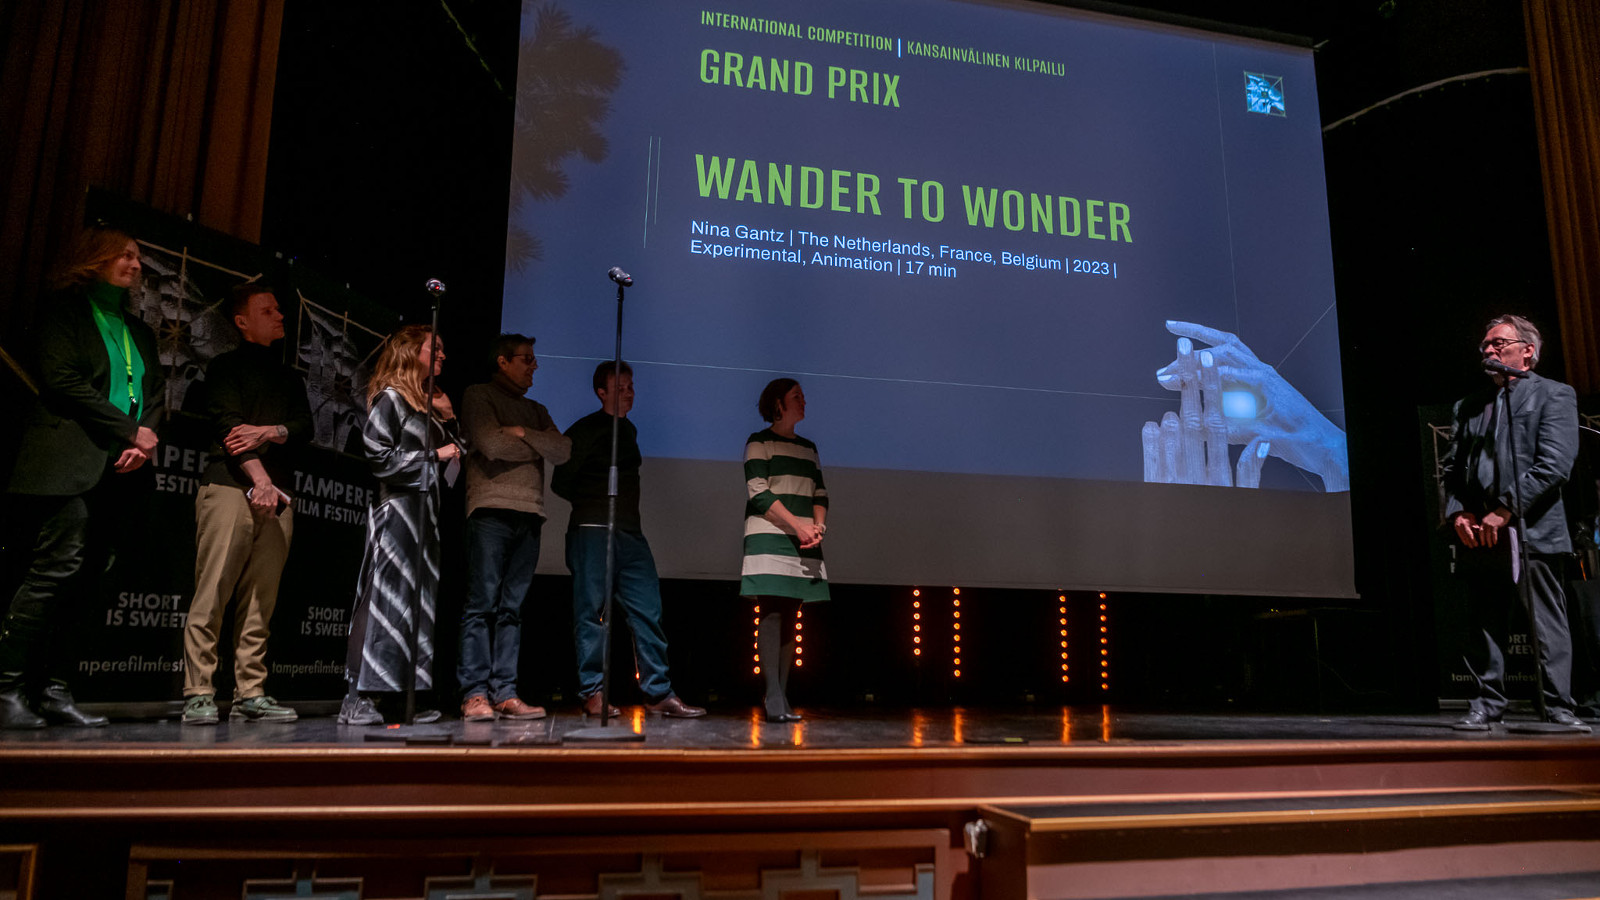 Kuvassa on rivissä seisomassa näyttämöllä kuusi palkinnonsaajaa ja oikealla on palkintojen jakaja. Taustalla on iso näyttö, jossa lukee isoin kirjaimin Grand Prix ja Wander to Wonder. Tausta on tumman sininen.